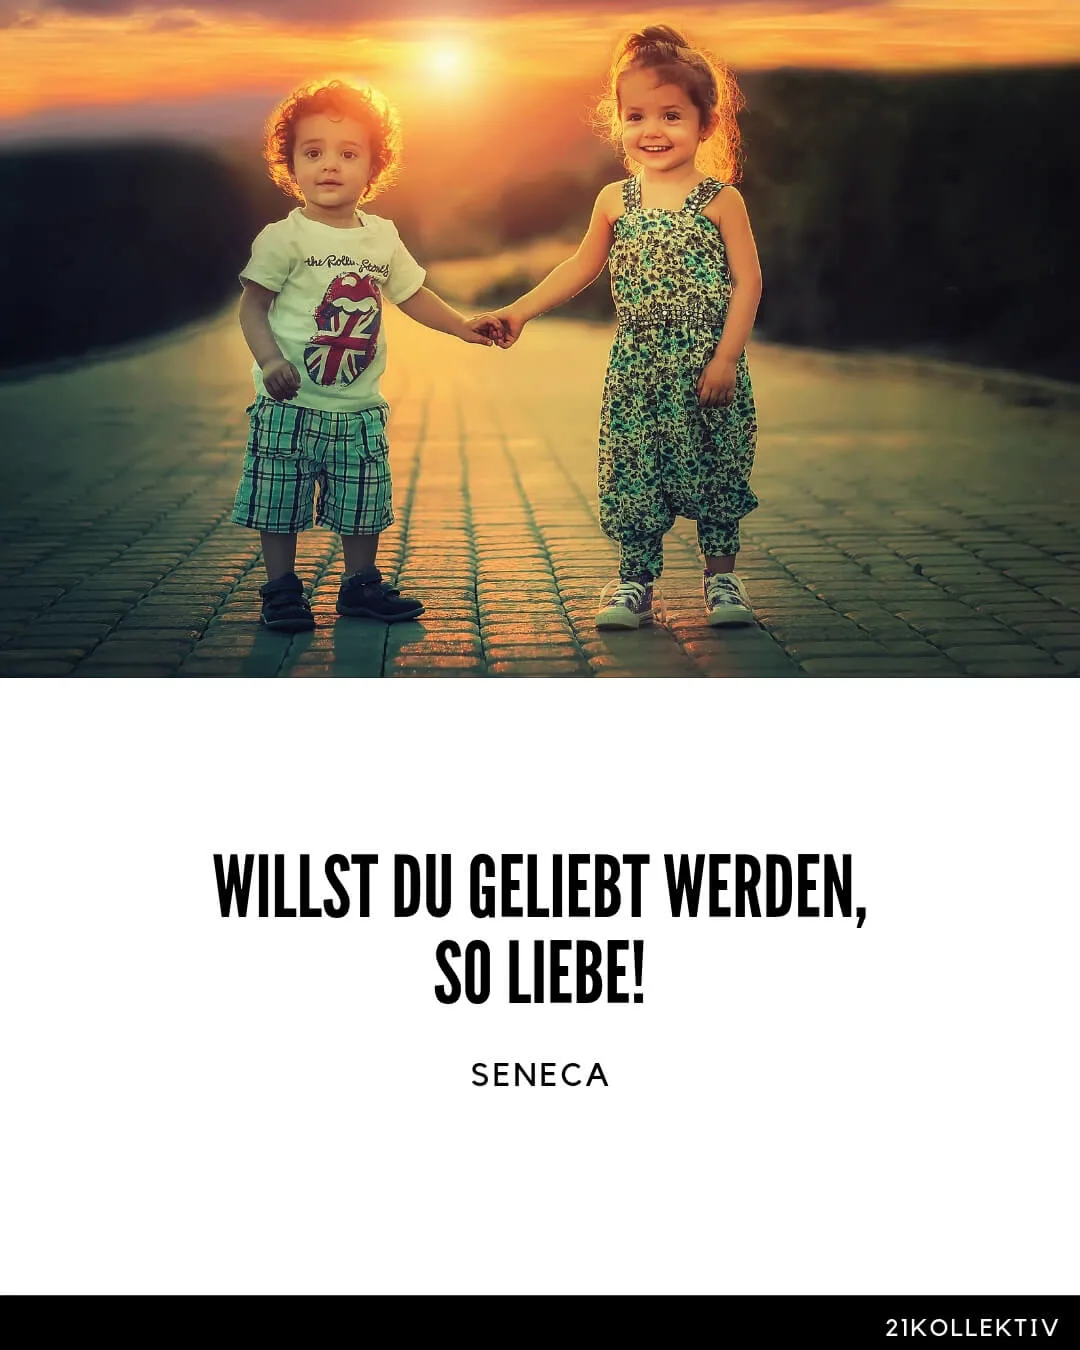 Die Wohl wichtigste Lebensweisheit von Seneca: Willst du geliebt werden, so liebe!